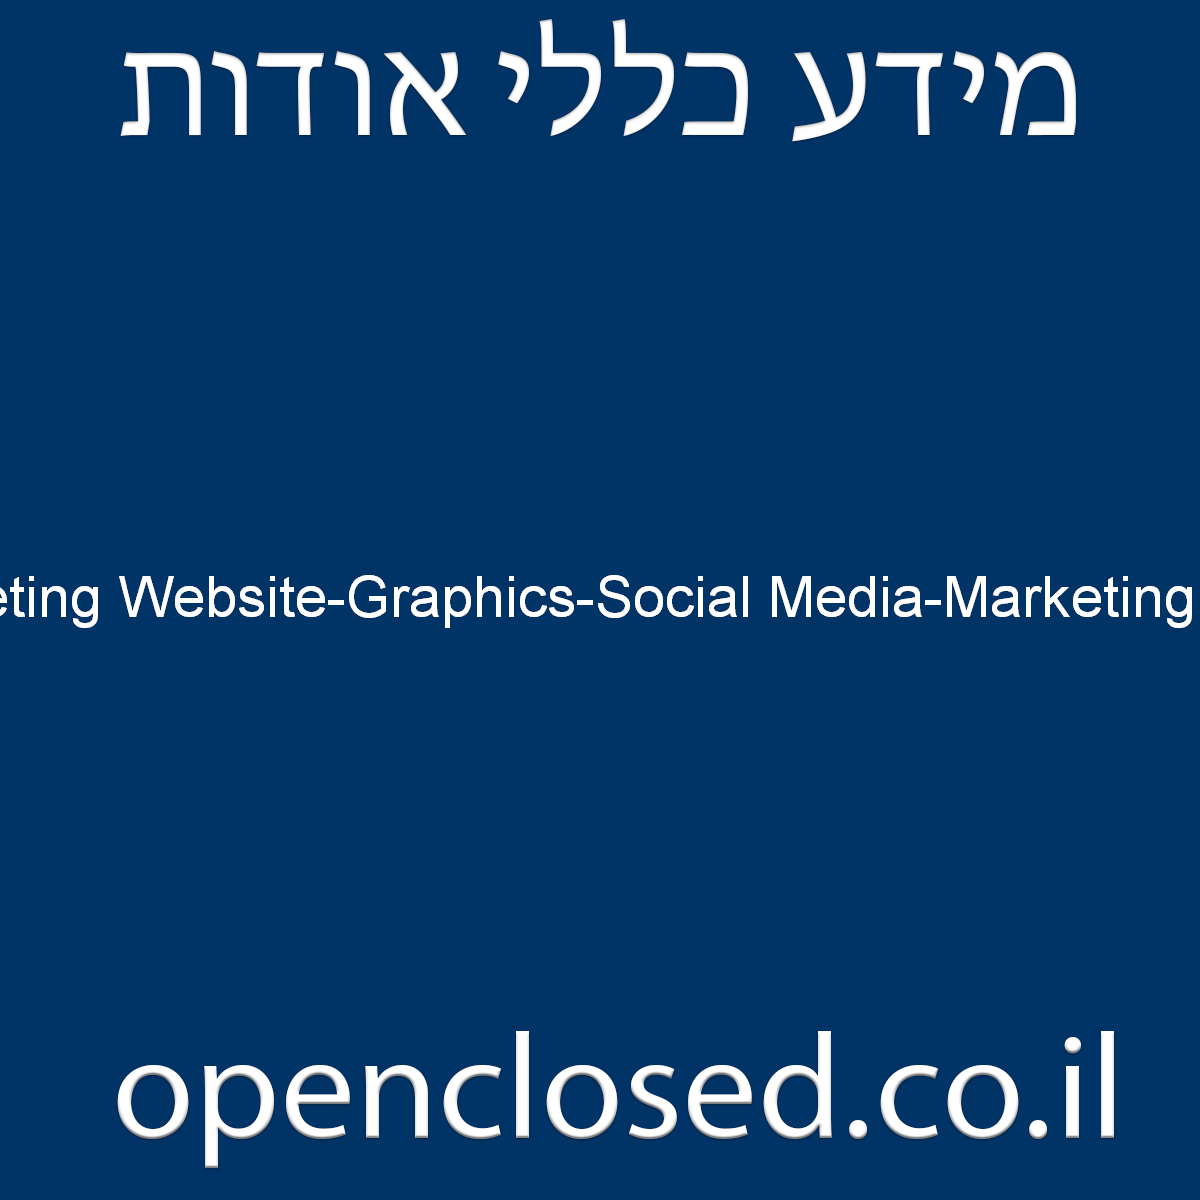 ADVPROIT Digital Marketing Website-Graphics-Social Media-Marketing